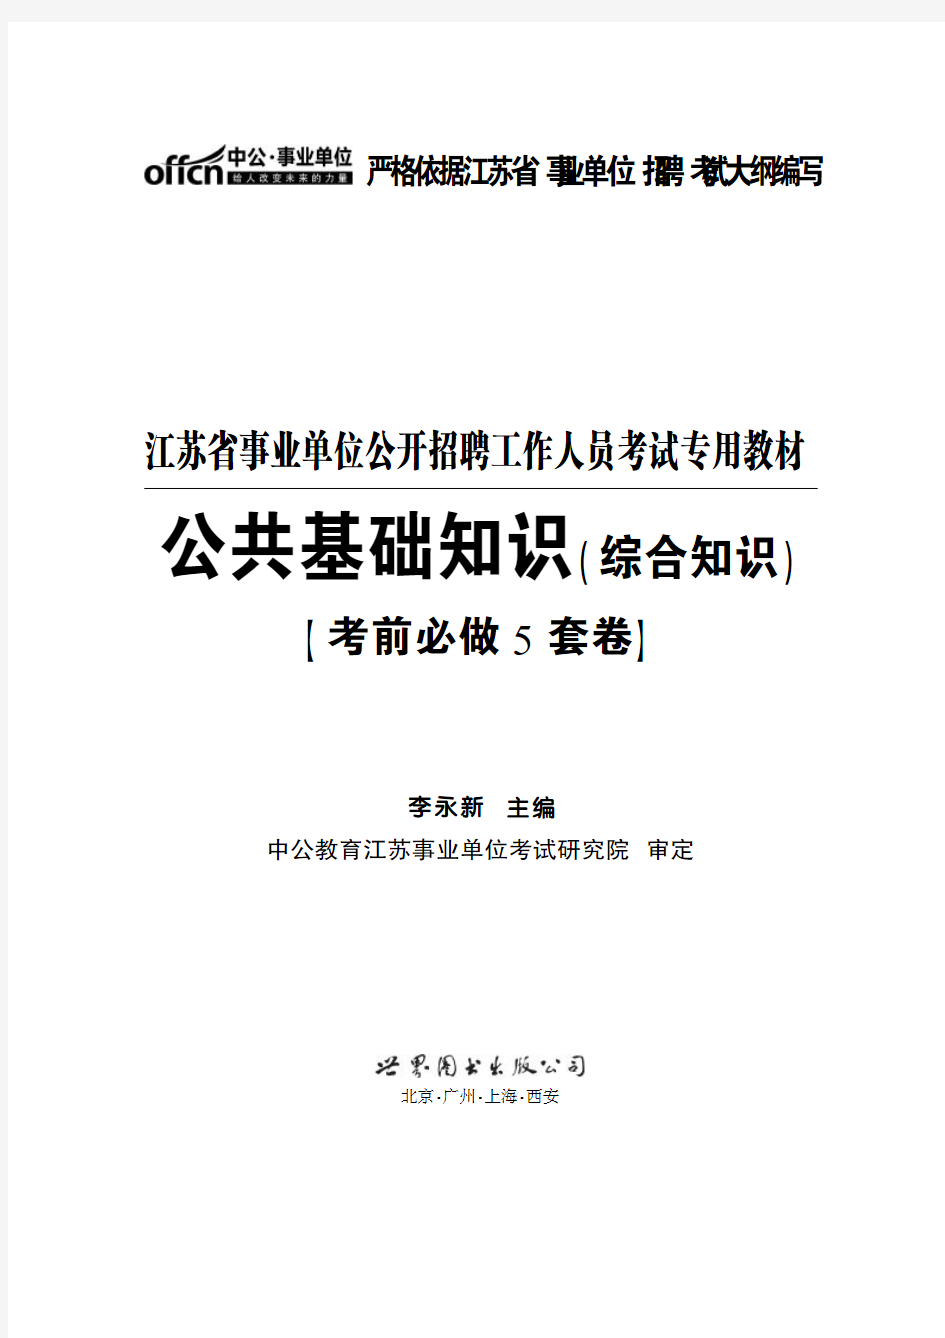 江苏省事业单位公开招聘工作人员考试专用教材 公共基础知识(综合知识) 考前必做5套卷